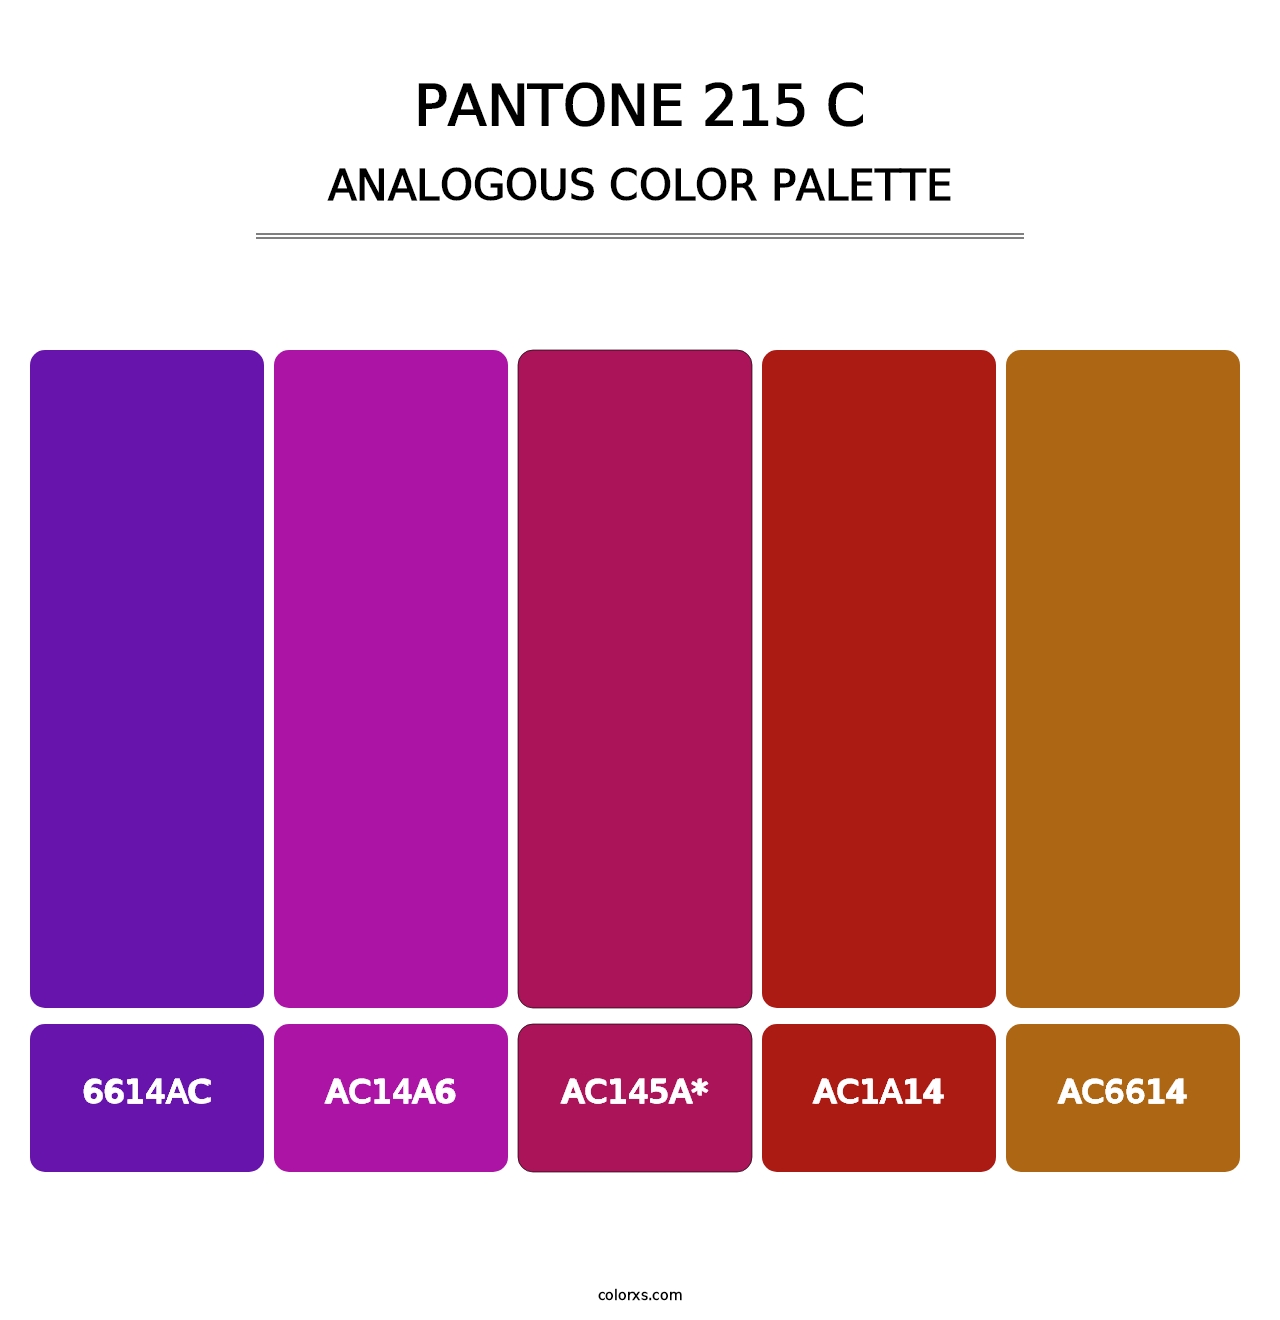 PANTONE 215 C - Analogous Color Palette